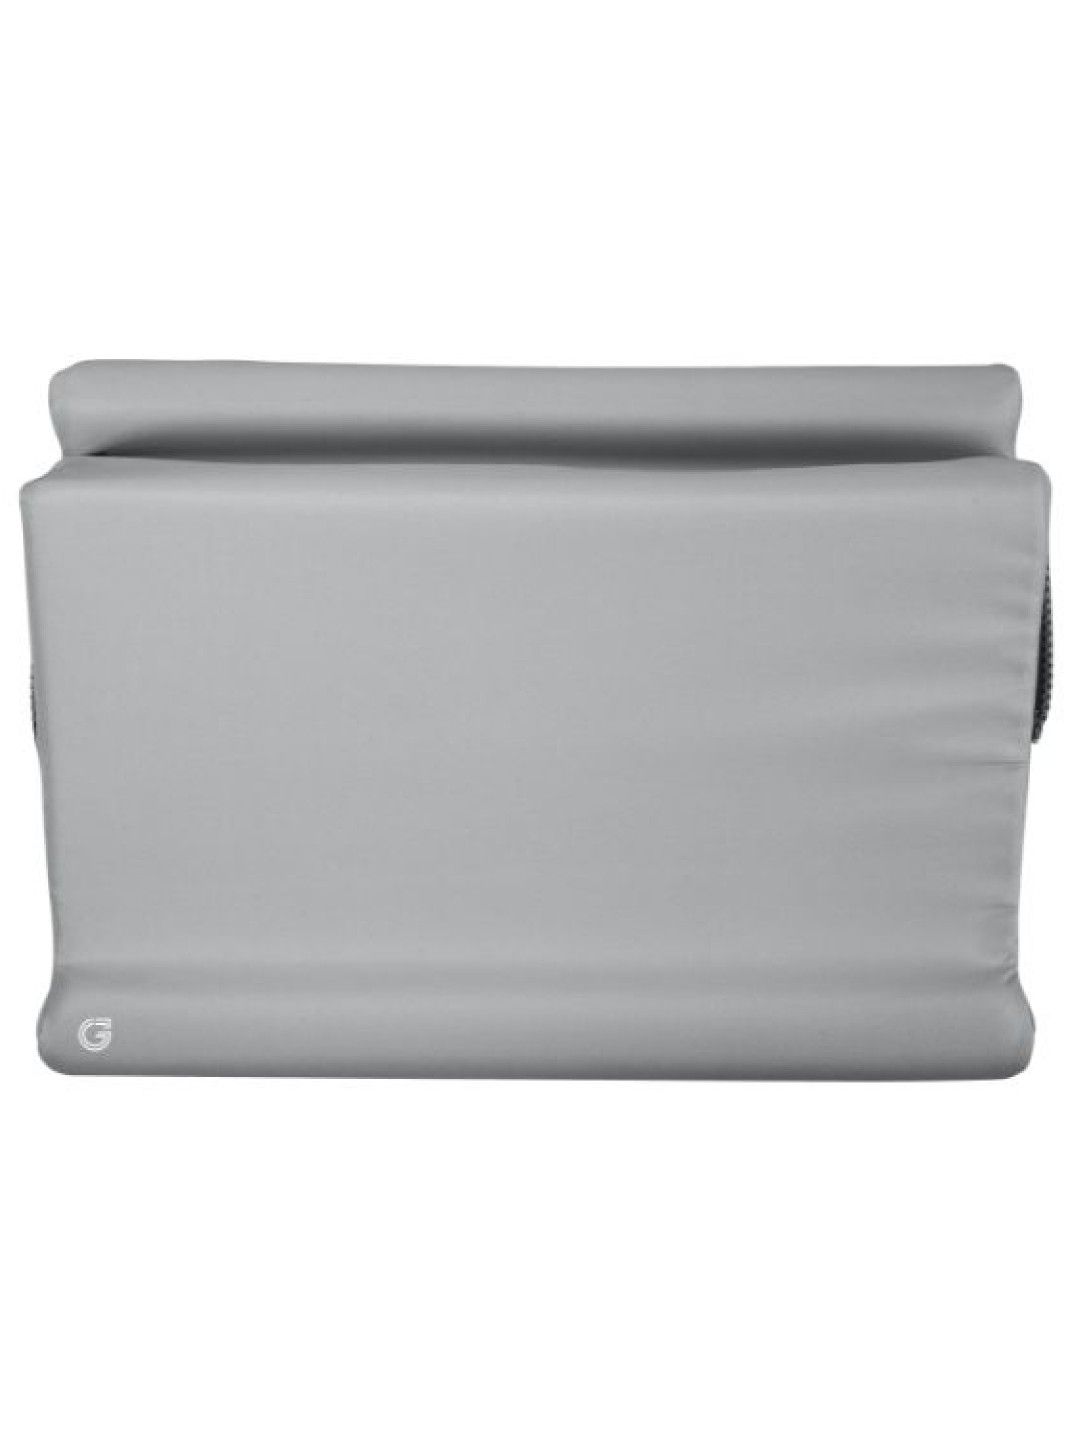 Sunbeams Lifestyle Gray Label Premium Laptop Pillow (No Color- Image 4)